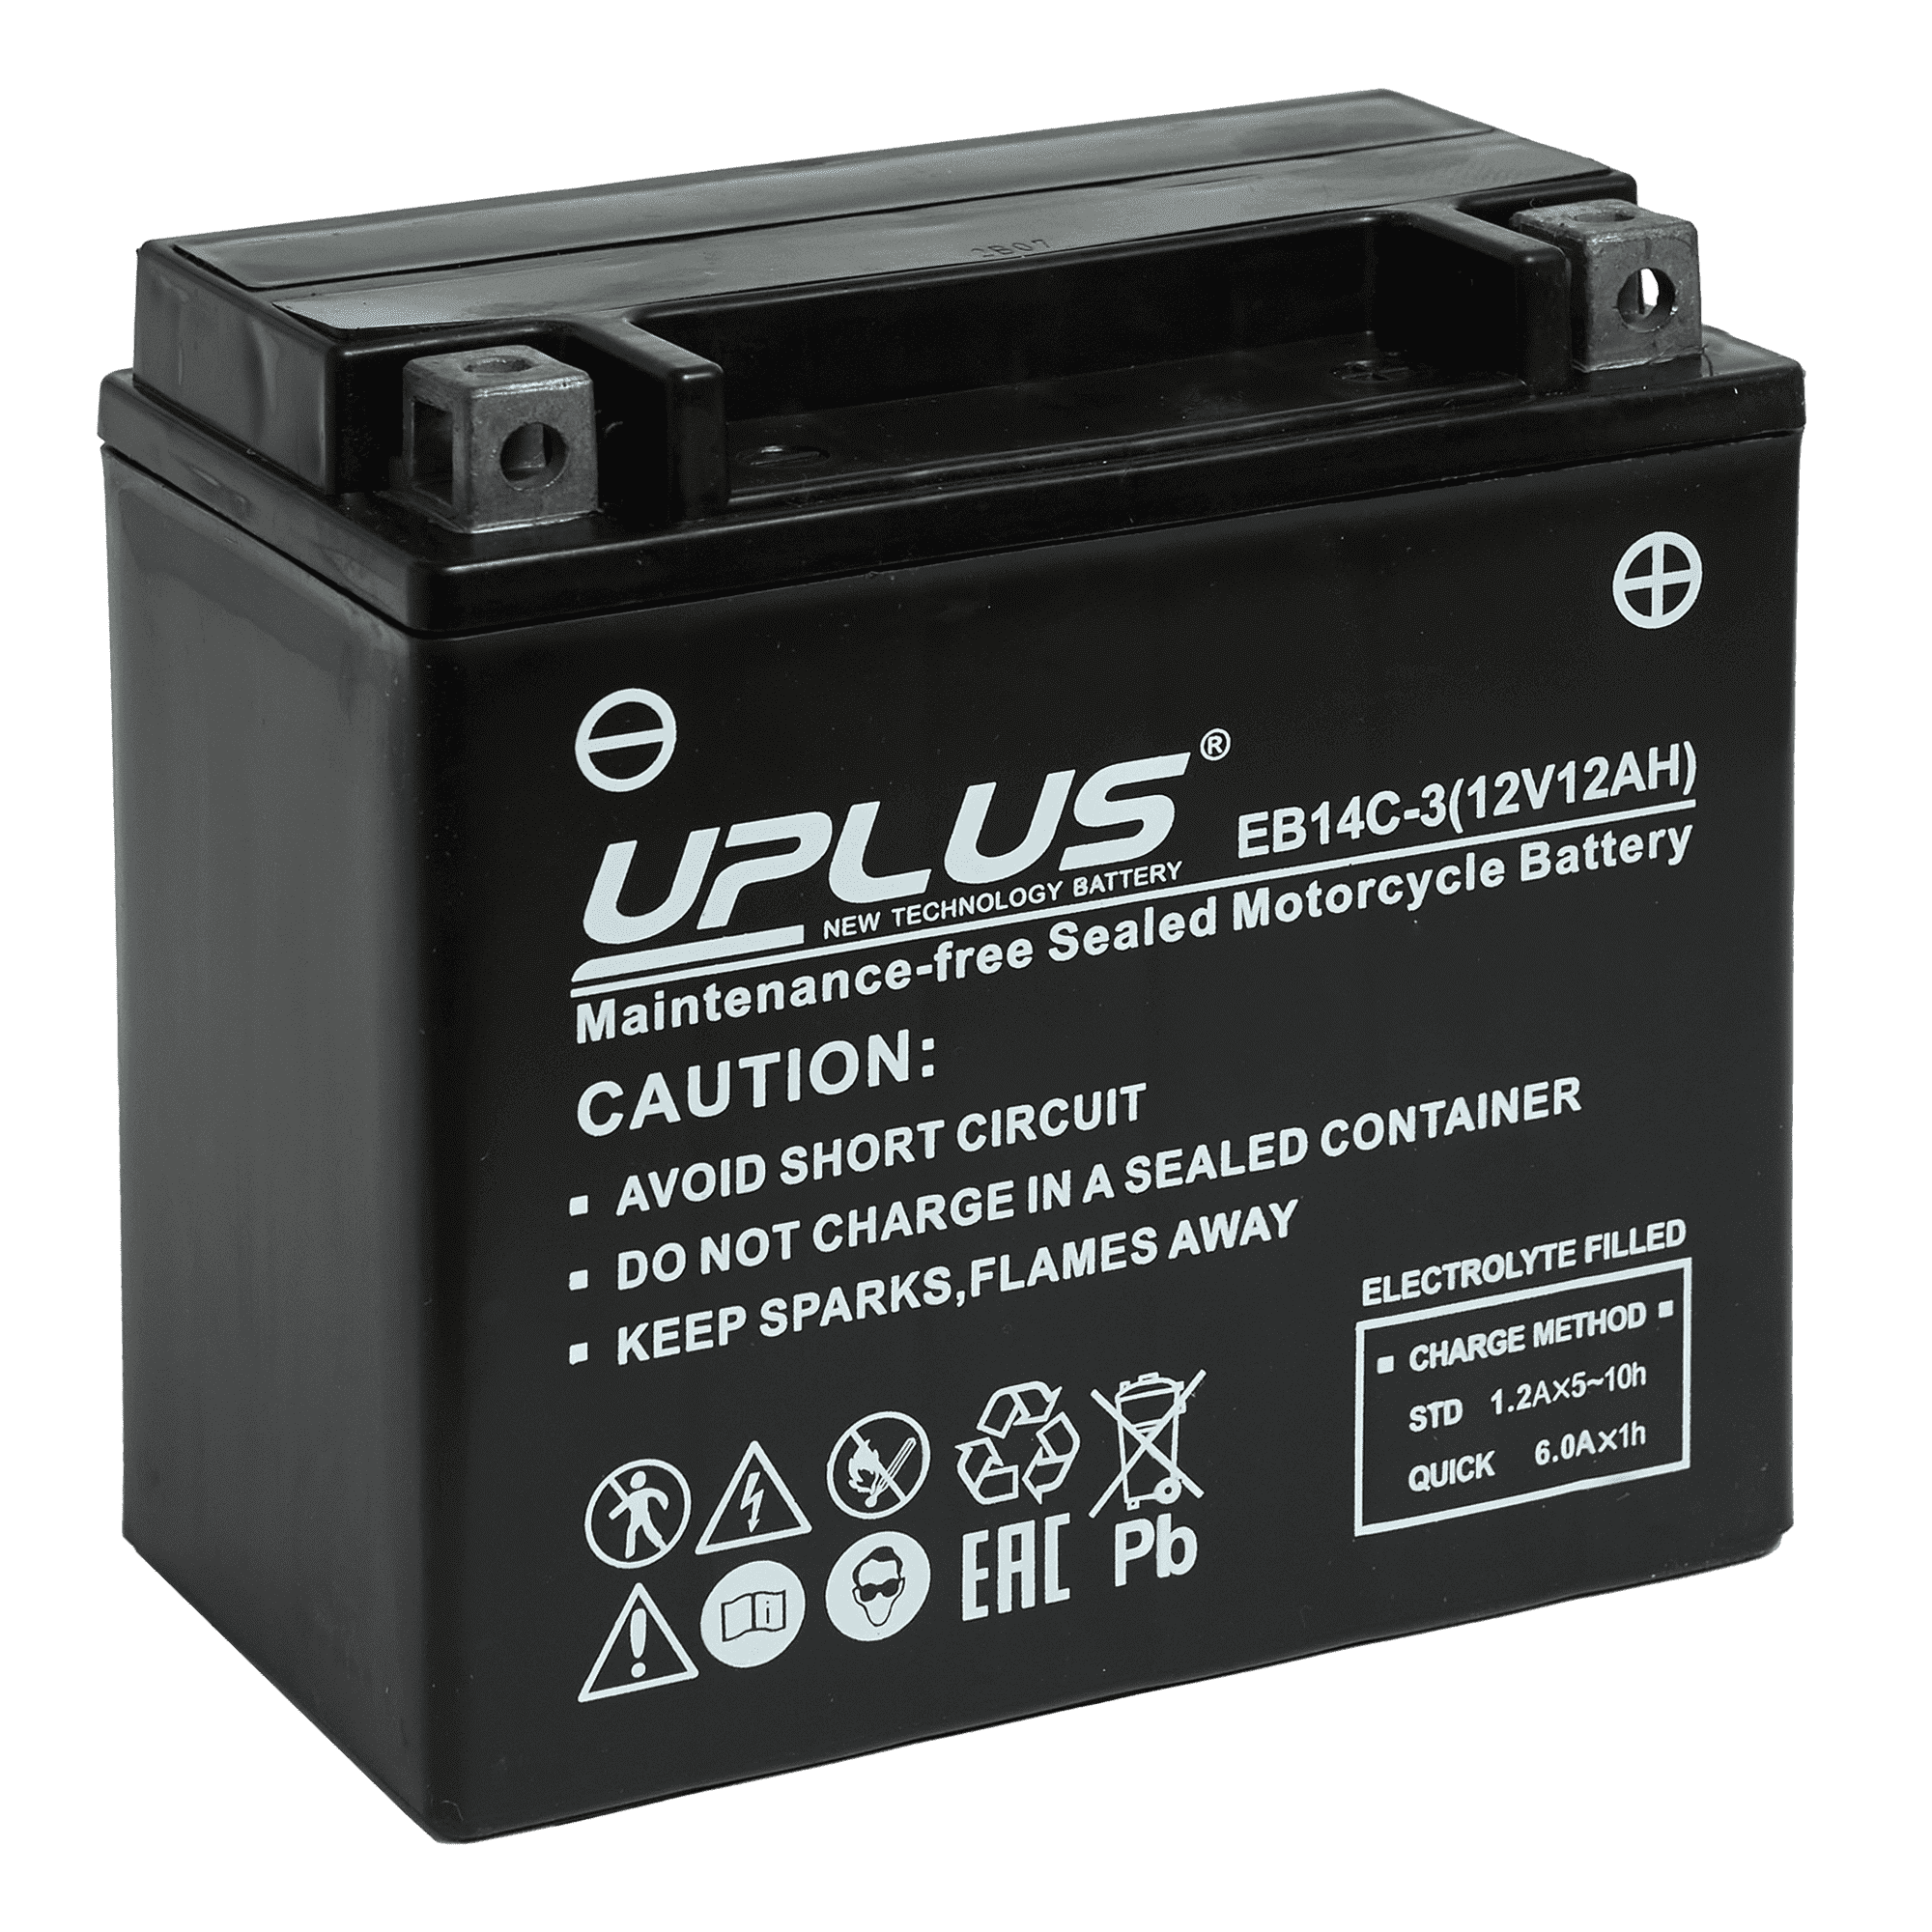 Мотоциклетная аккумуляторная батарея UPLUS High Performance  EB14C-3, 12 Ач, 0/1